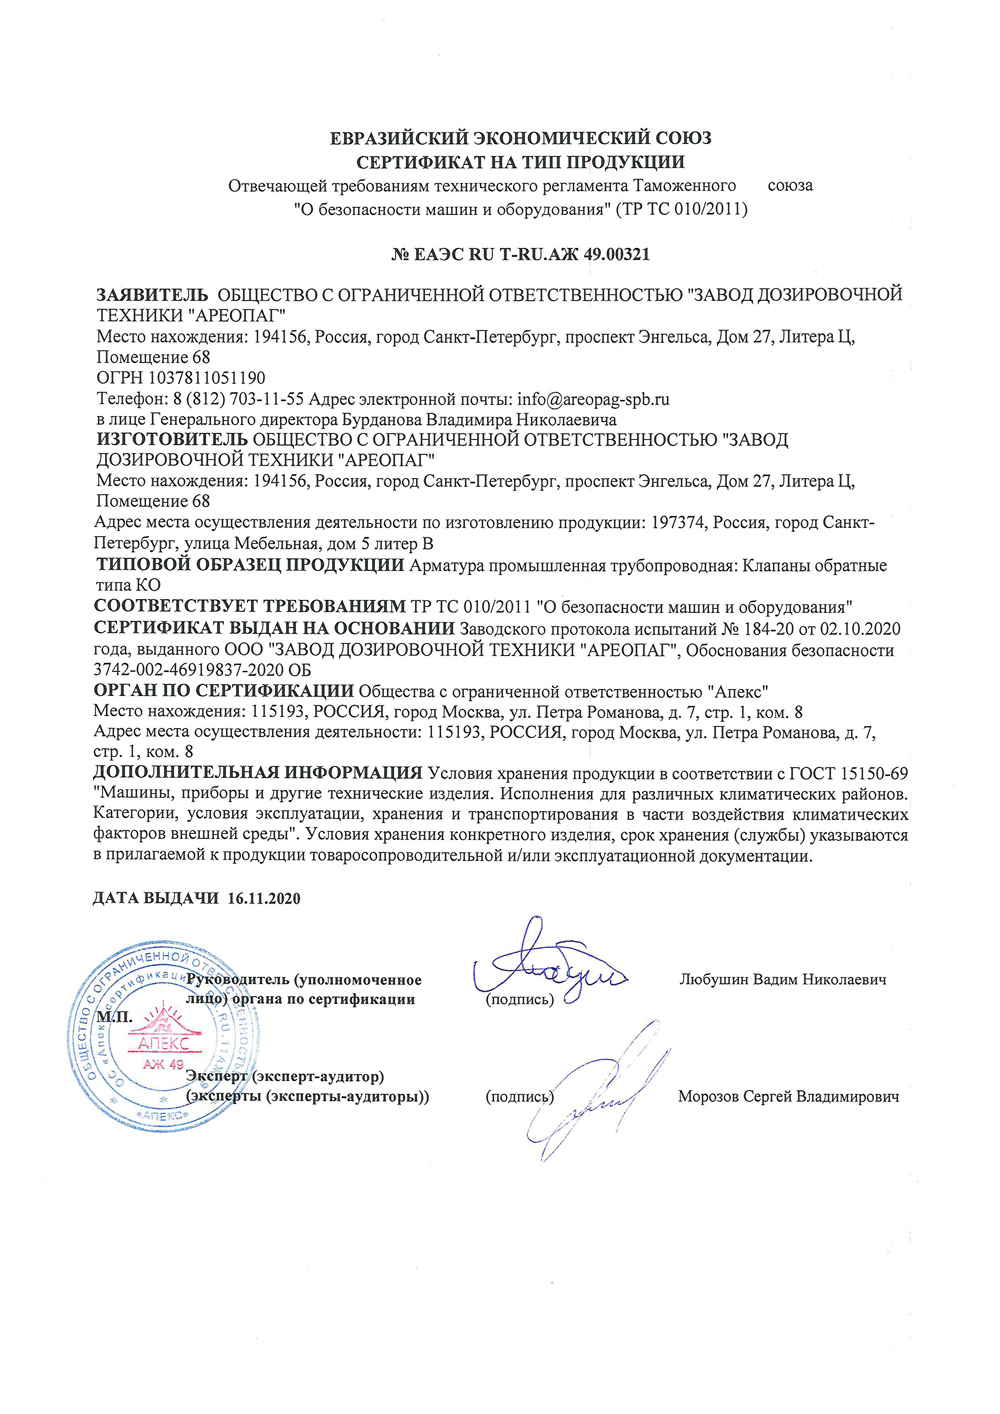 Сертификат соответствия ТР ТС на тип продукции Клапаны обратные типа КО № ЕАЭС RU T-RU.АЖ 49.00321